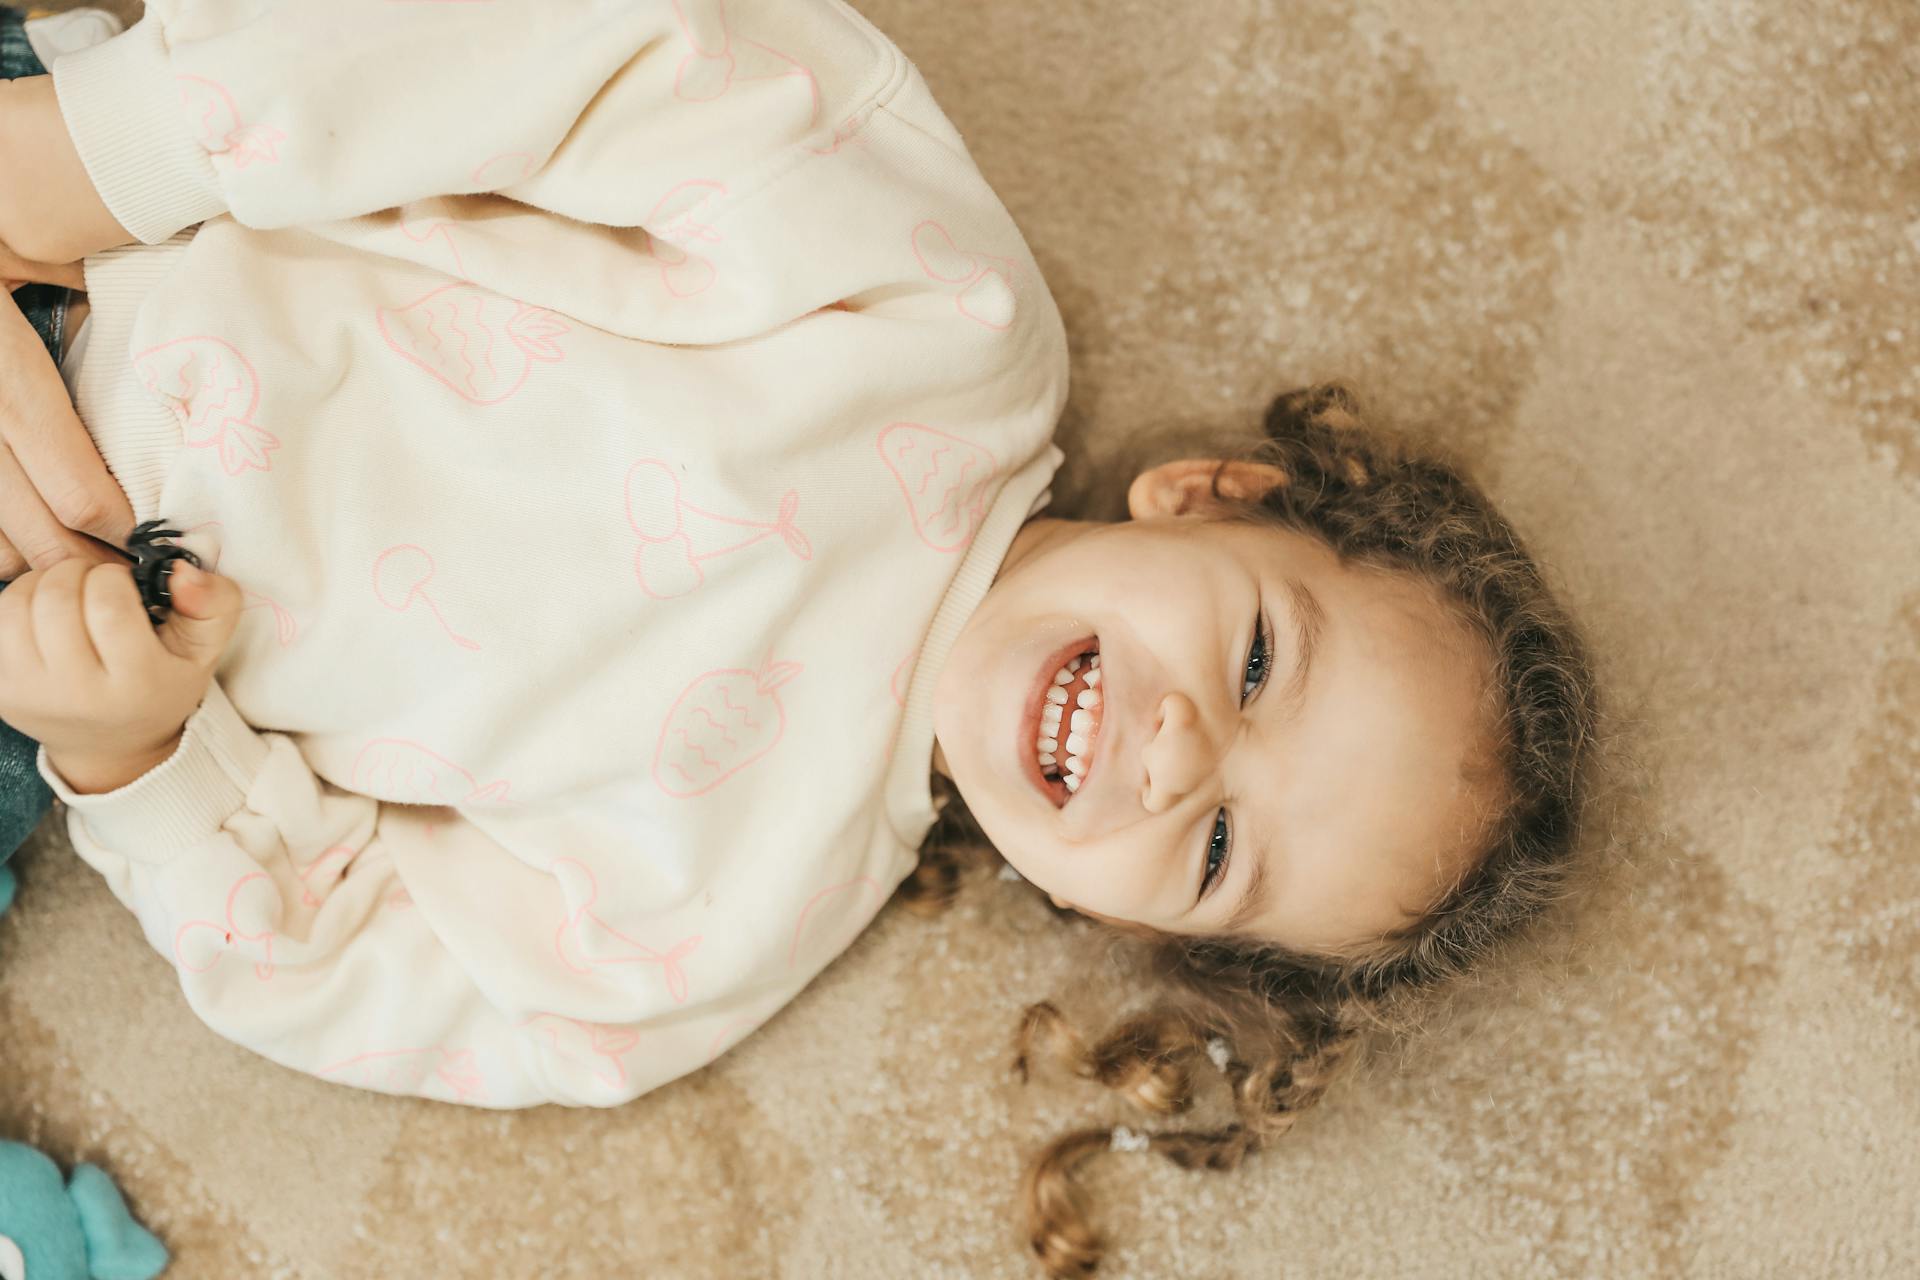 Un enfant souriant allongé sur le sol | Source : Pexels